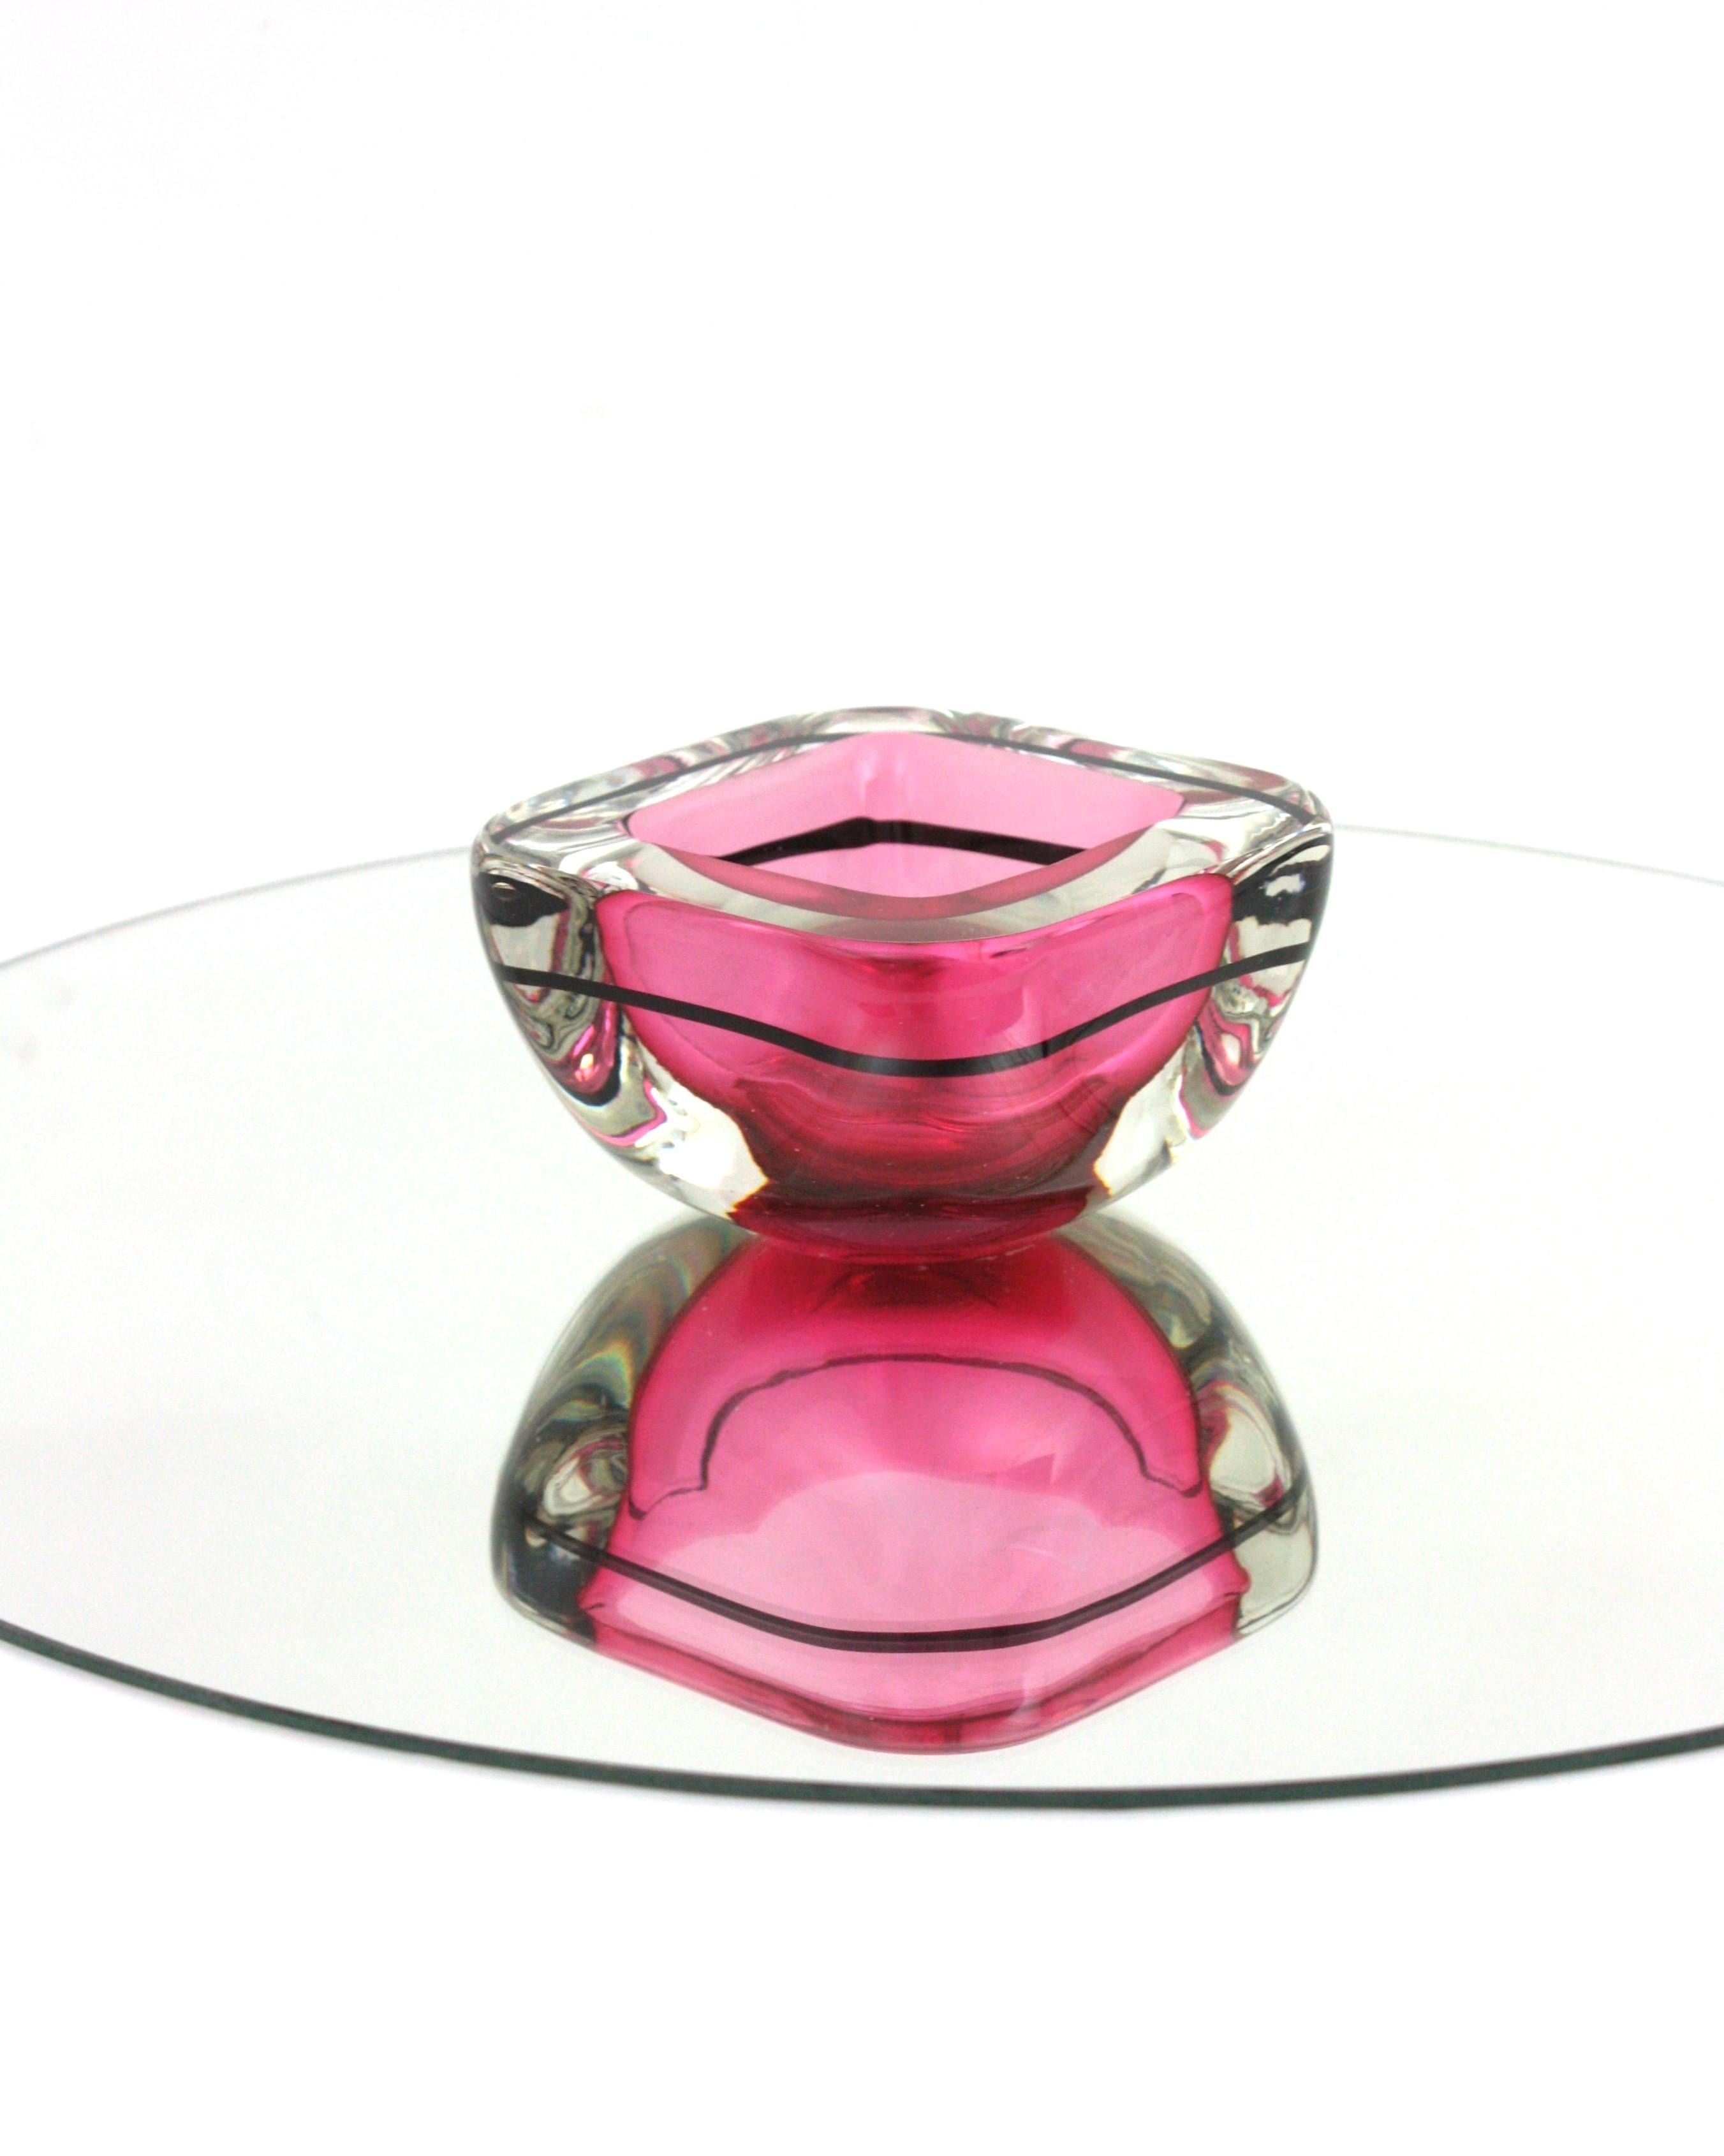 Bol à géode rose en verre de Murano Sommerso avec rayure noire
Coupe en forme de géode carrée en verre soufflé à la bouche de Murano Sommerso en rose, noir et transparent . Italie, années 1960.
Une couleur qui attire l'attention, un rose vibrant, un